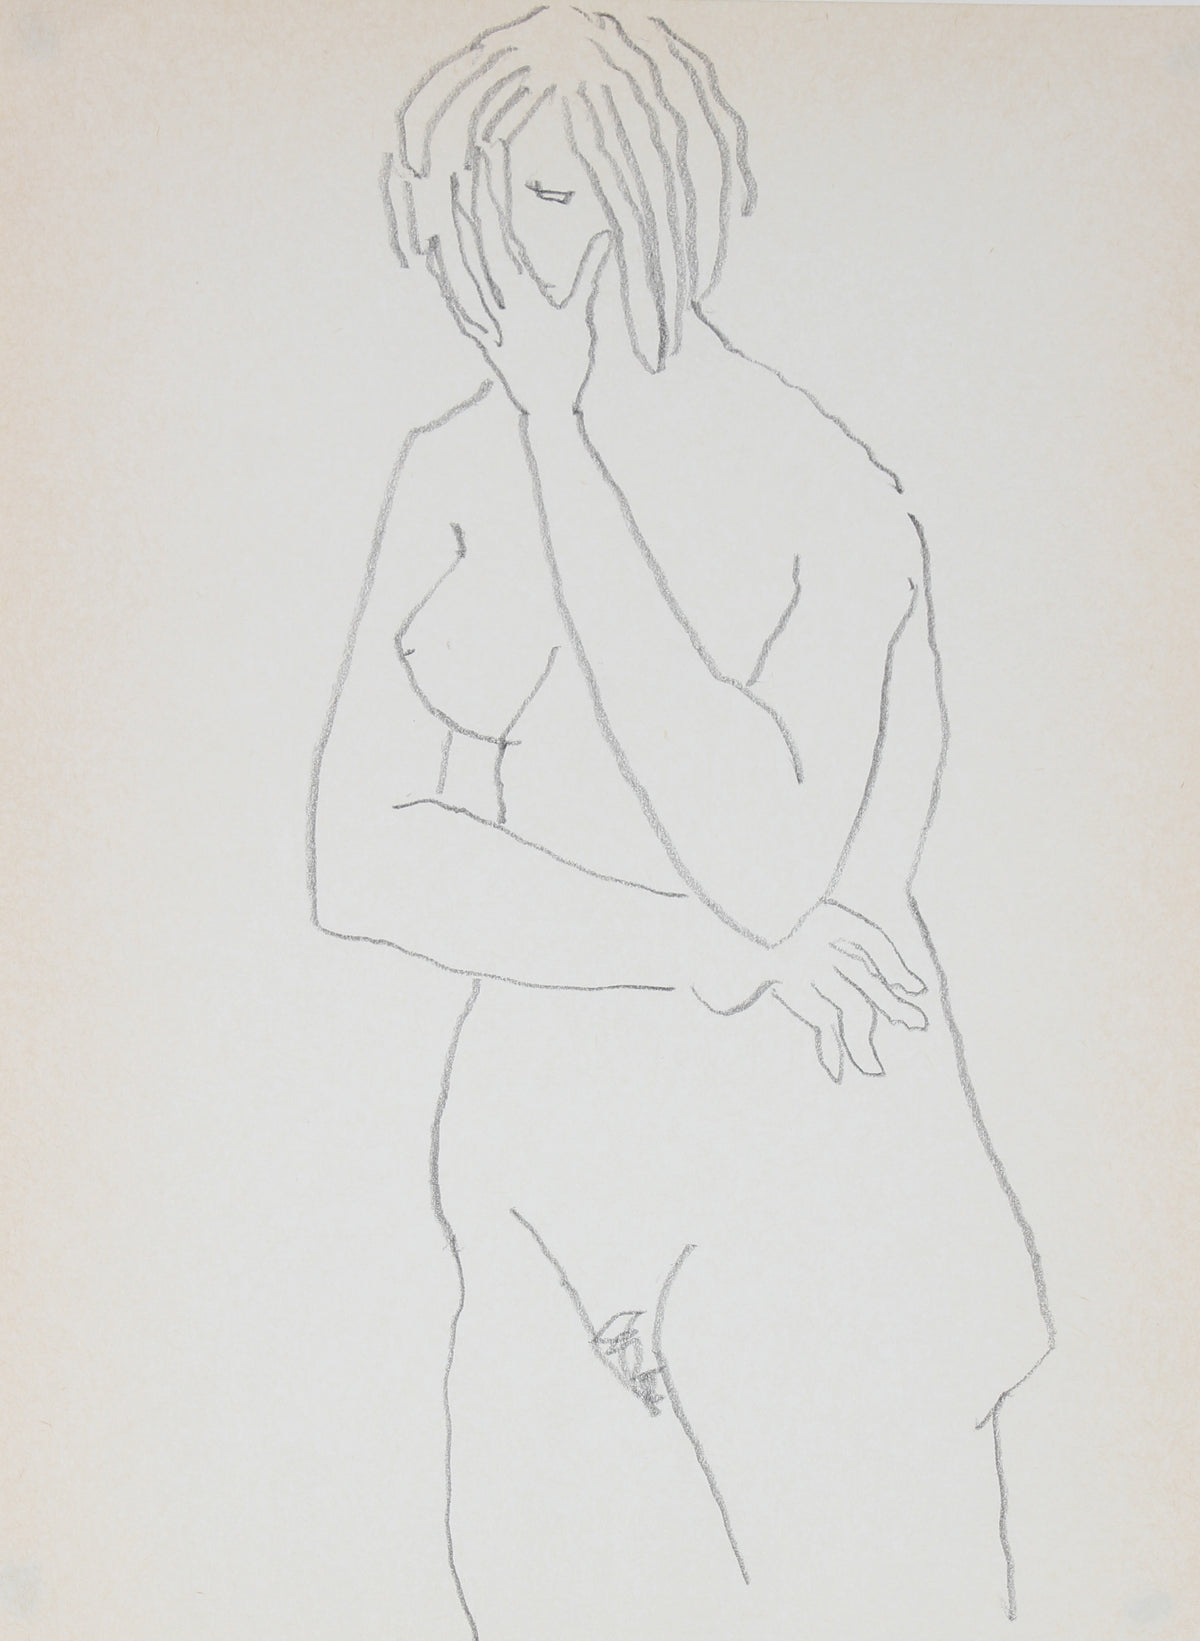 Standing Nude Figure Drawing &lt;br&gt;1989 Graphite &lt;br&gt;&lt;br&gt;#30031